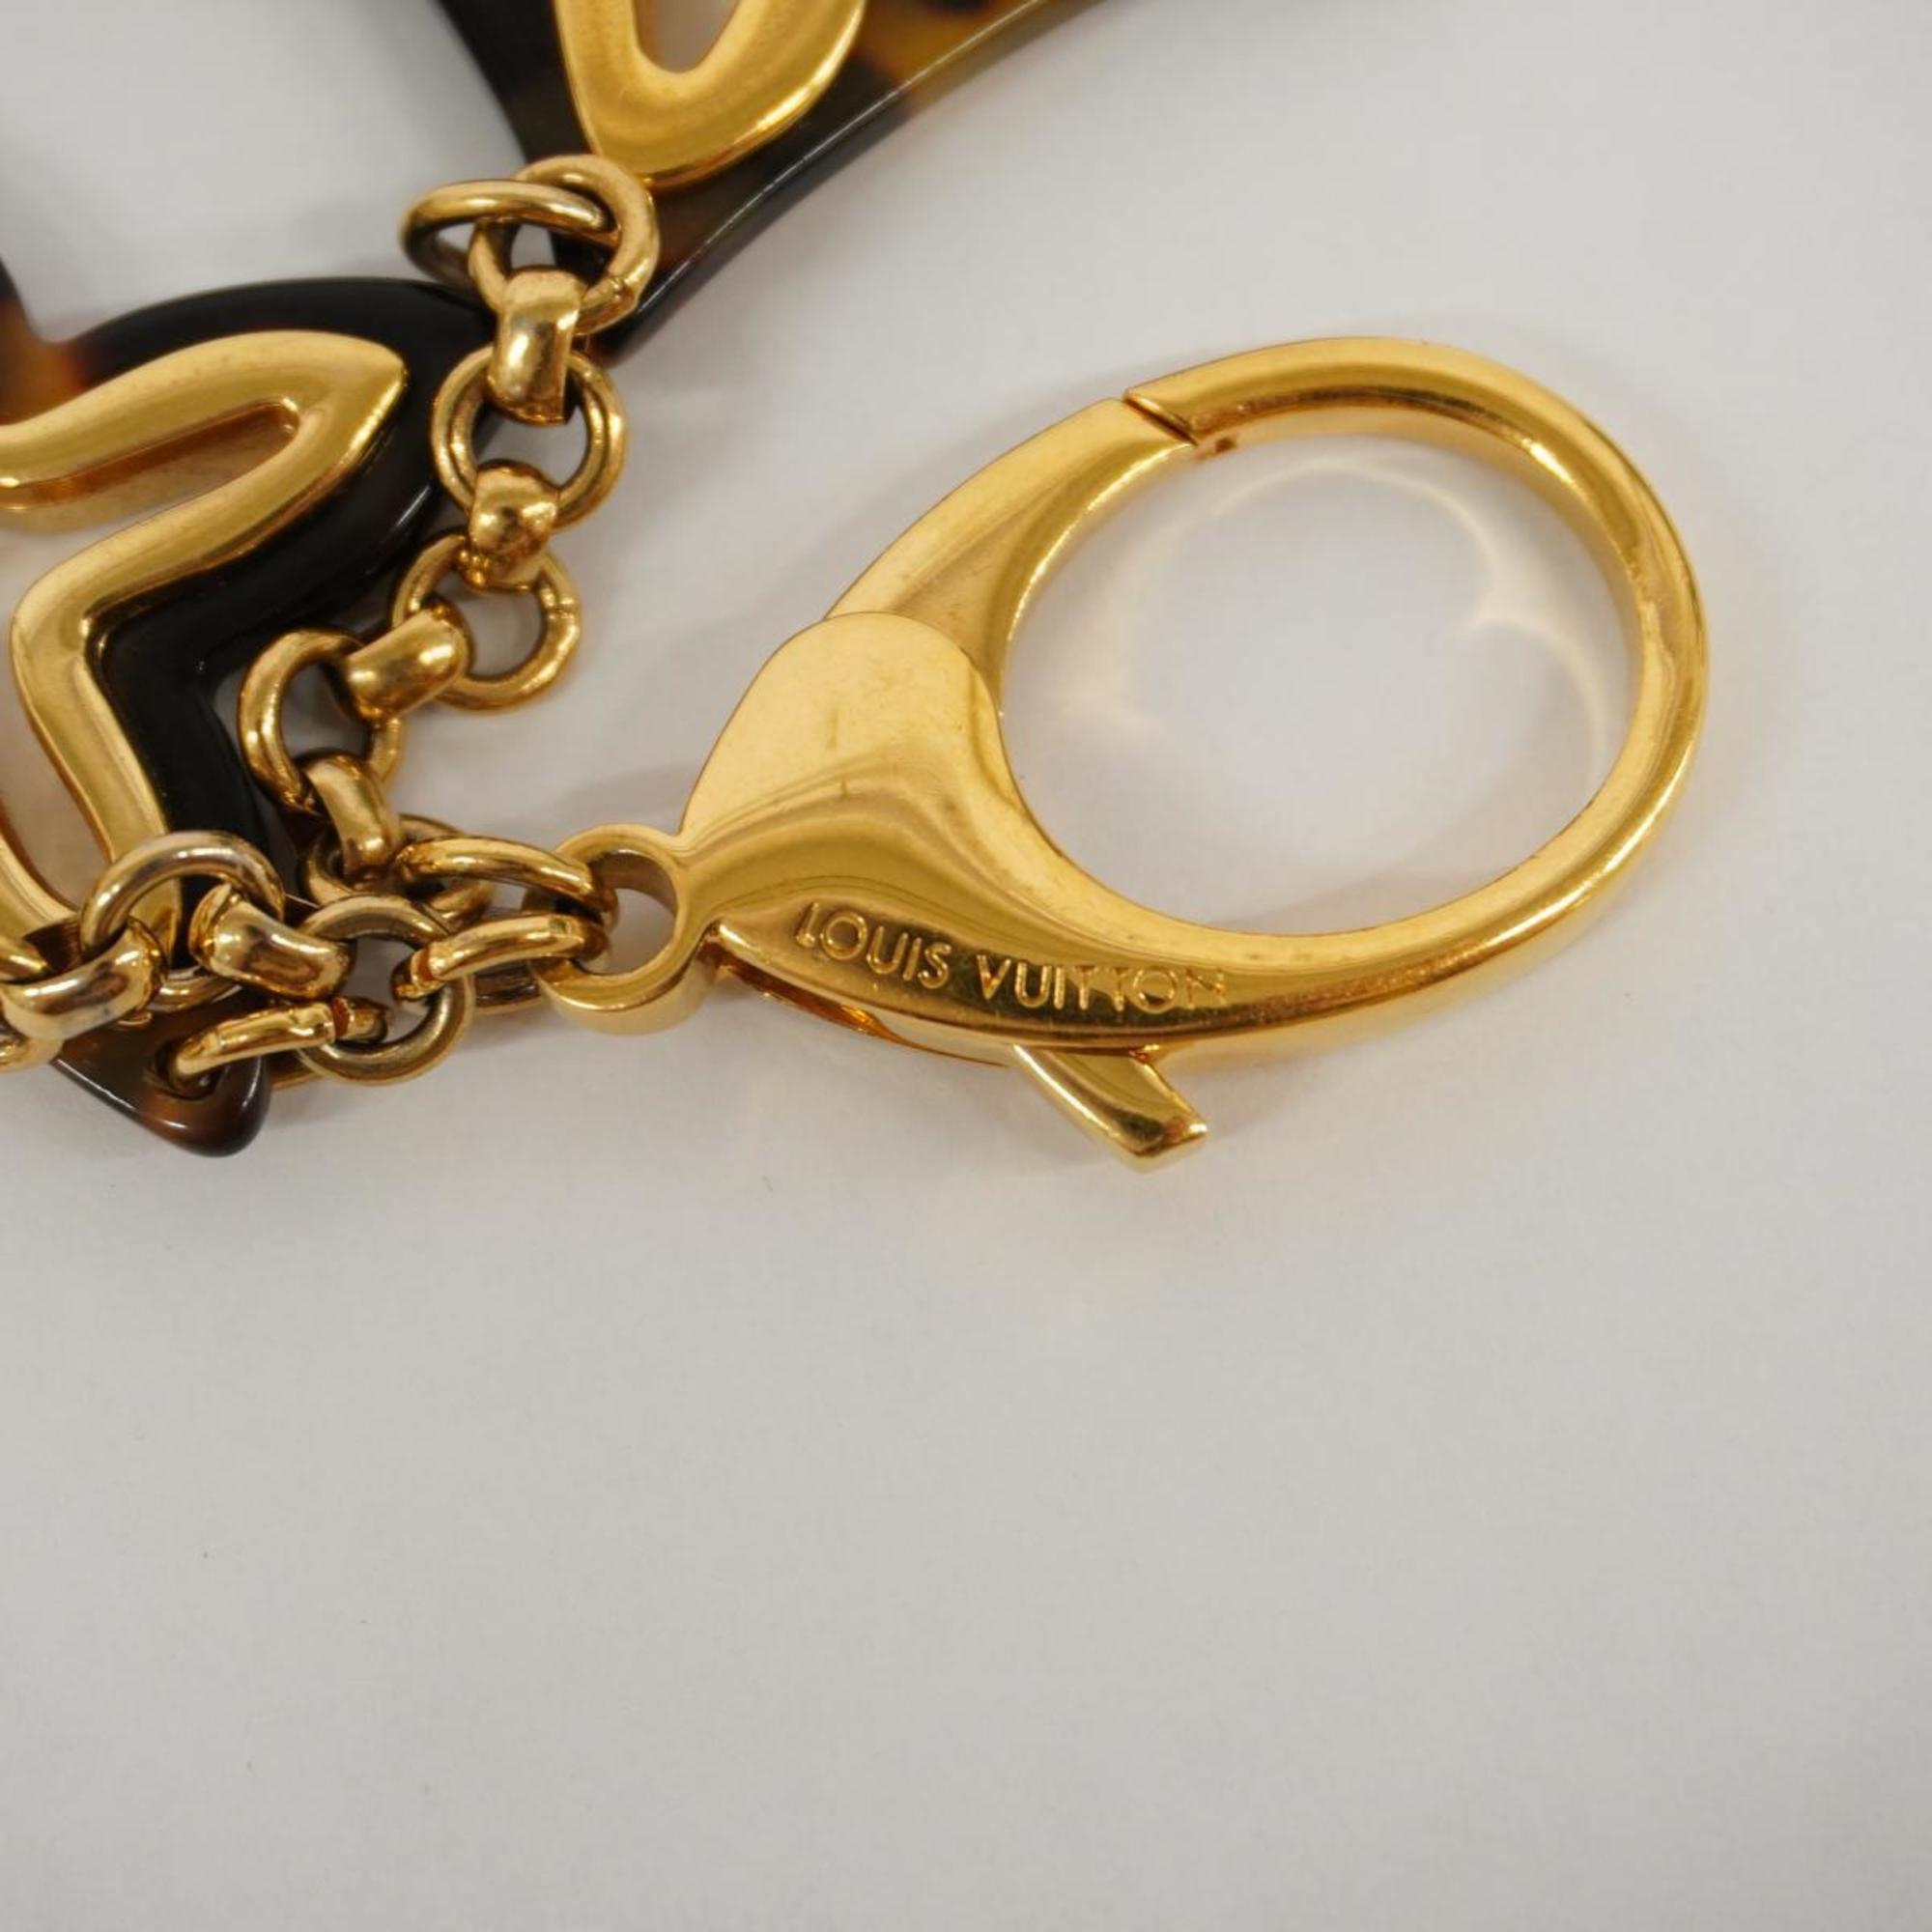 Louis Vuitton Keychain Bijoux Sac Ansolence M65087 Brown Gold Women's